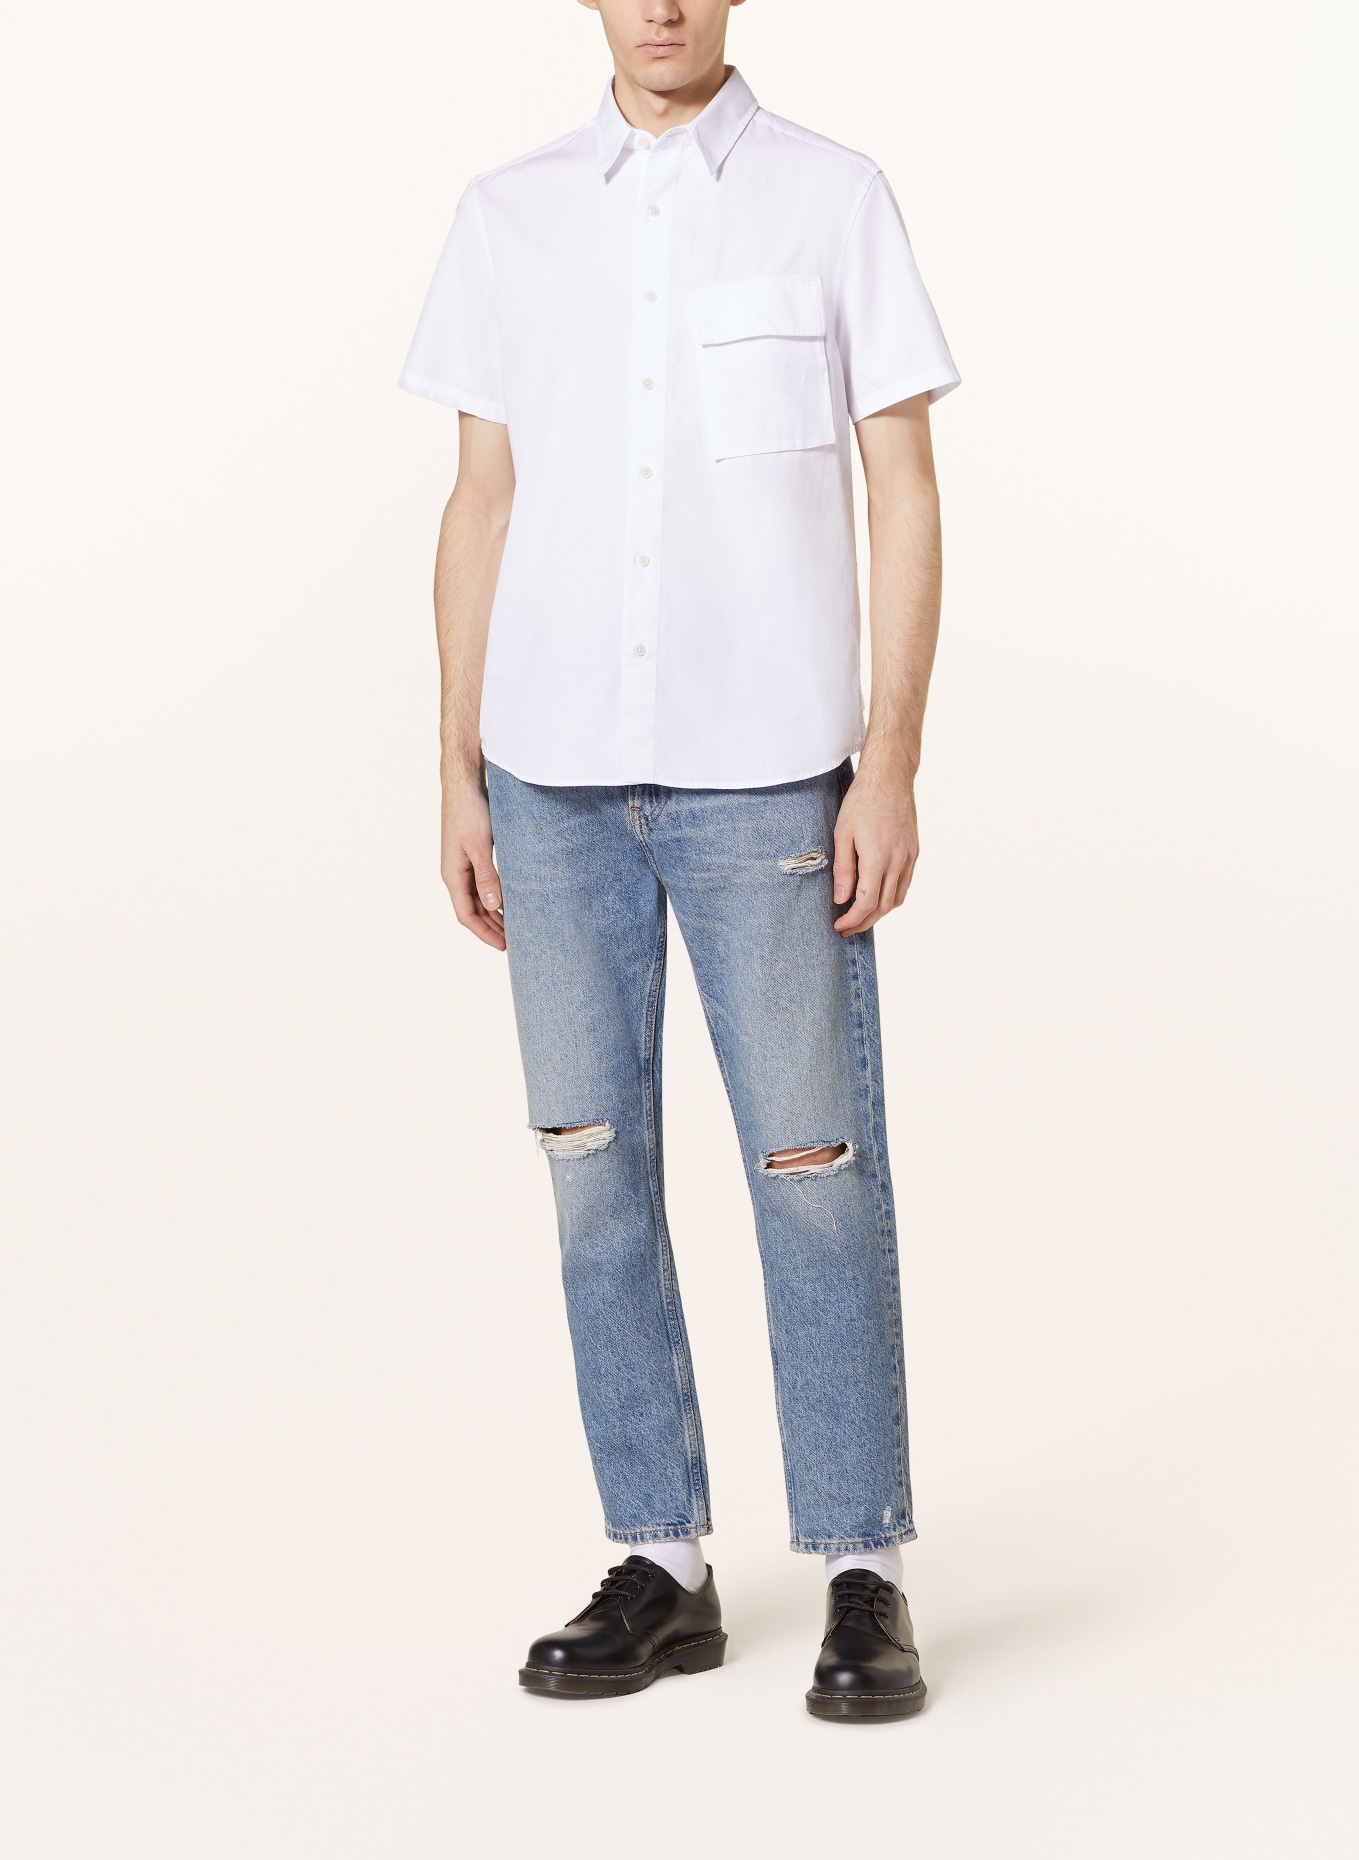 BELSTAFF Short sleeve shirt regular fit, Color: WHITE (Image 2)